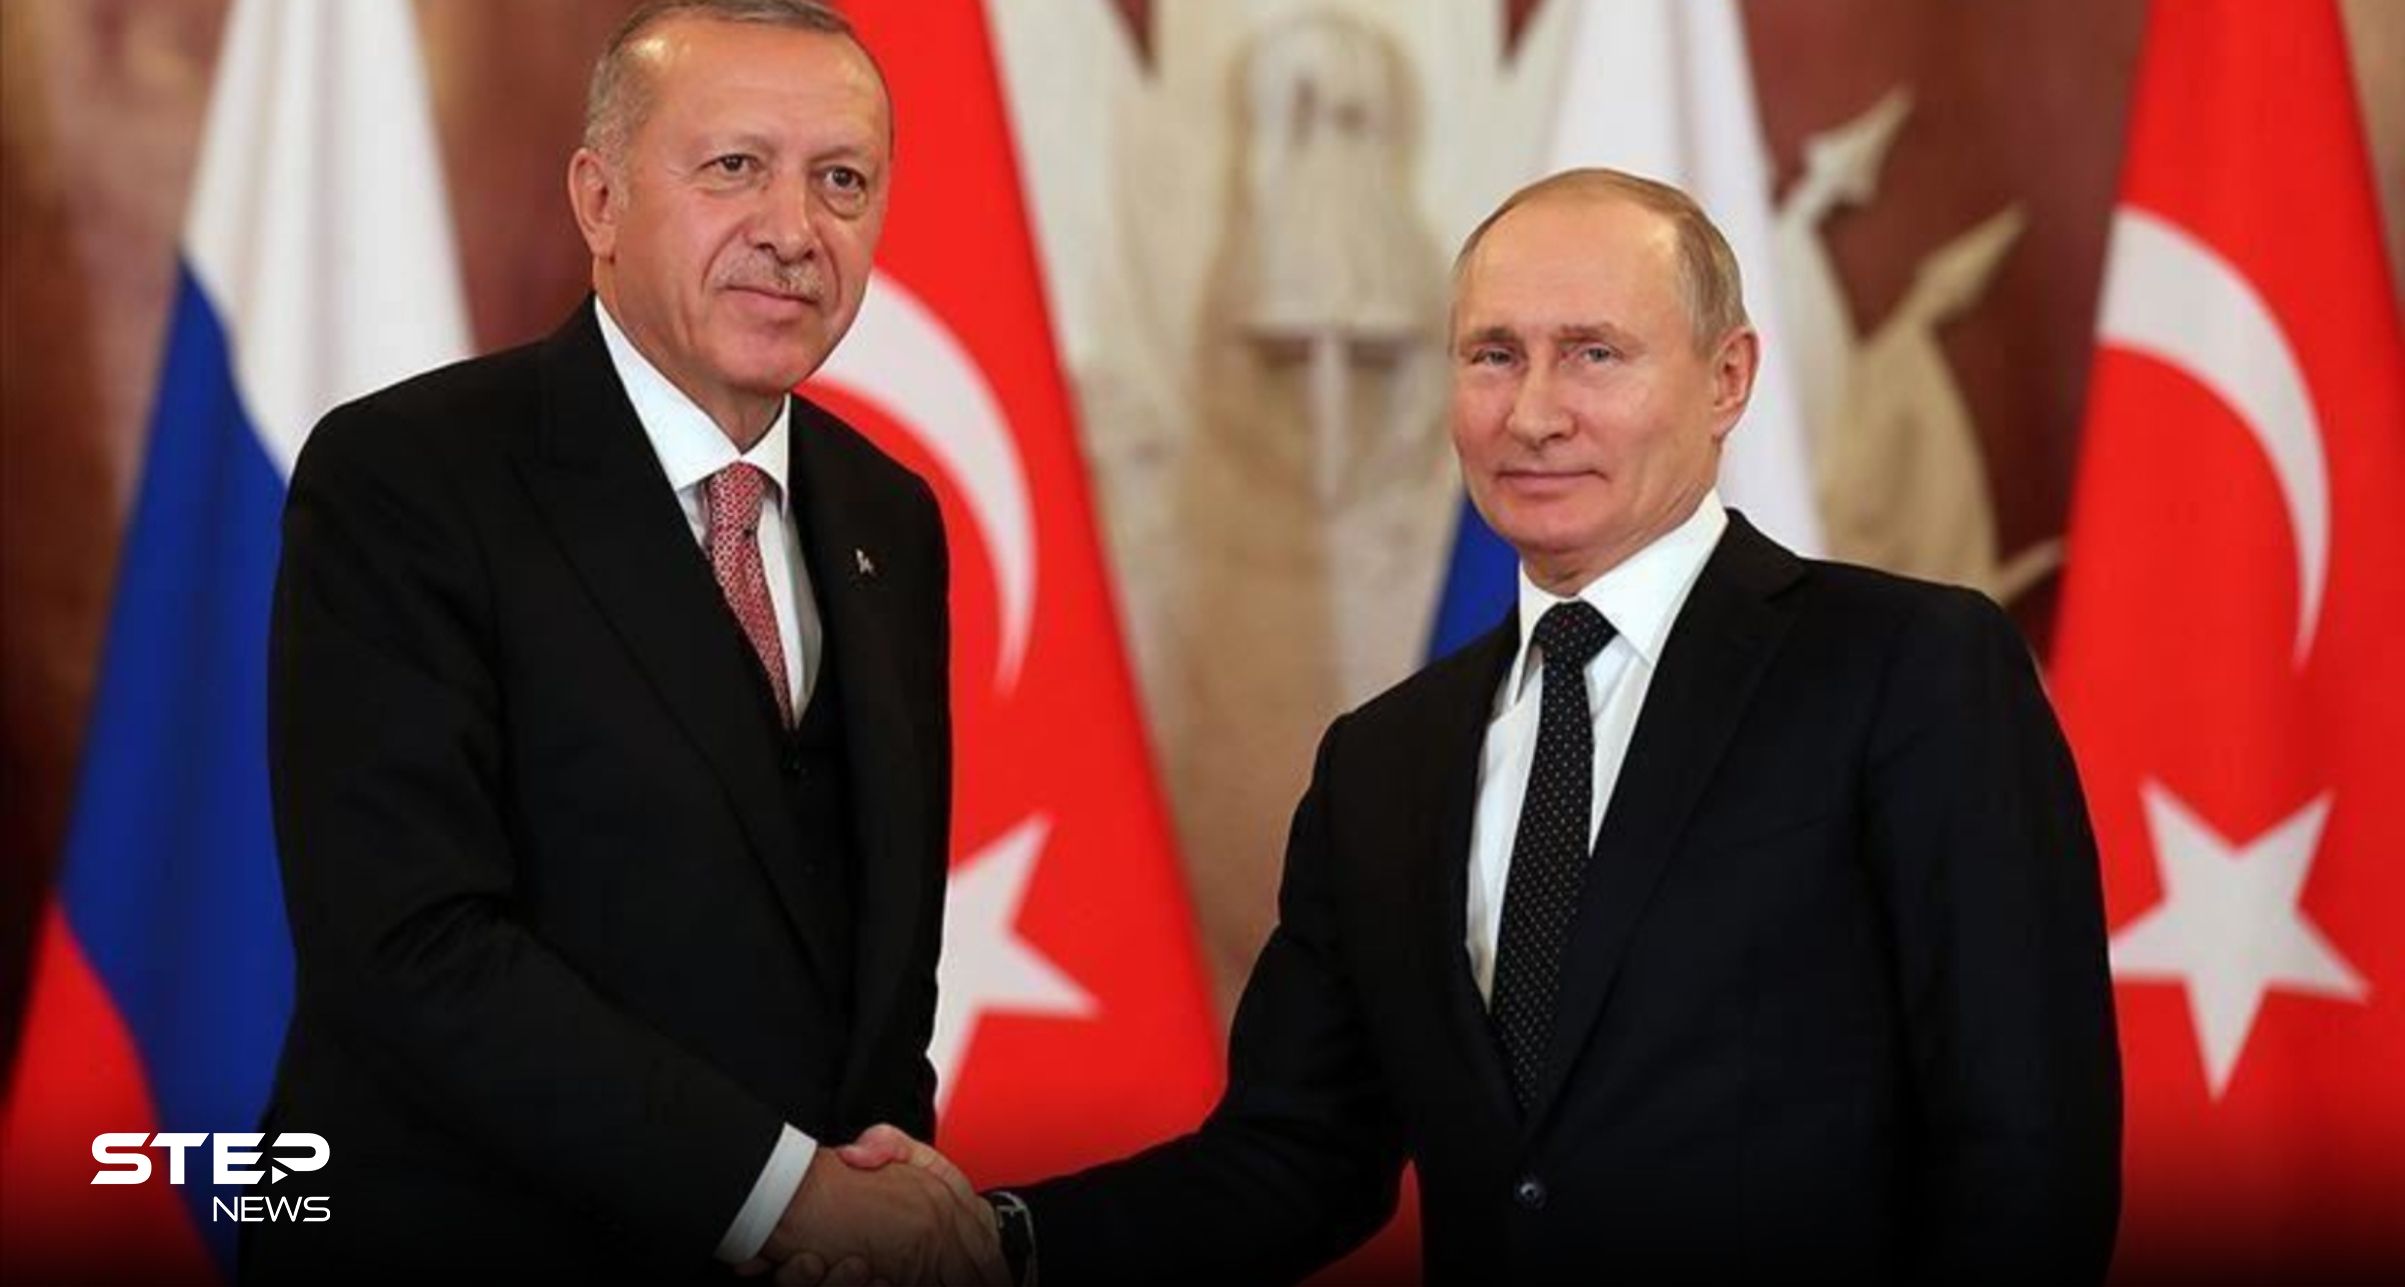 عقب لقائه بأردوغان.. بوتين يضع شرطاً للعودة إلى اتفاقية الحبوب وحديث عن مستقبل سوريا